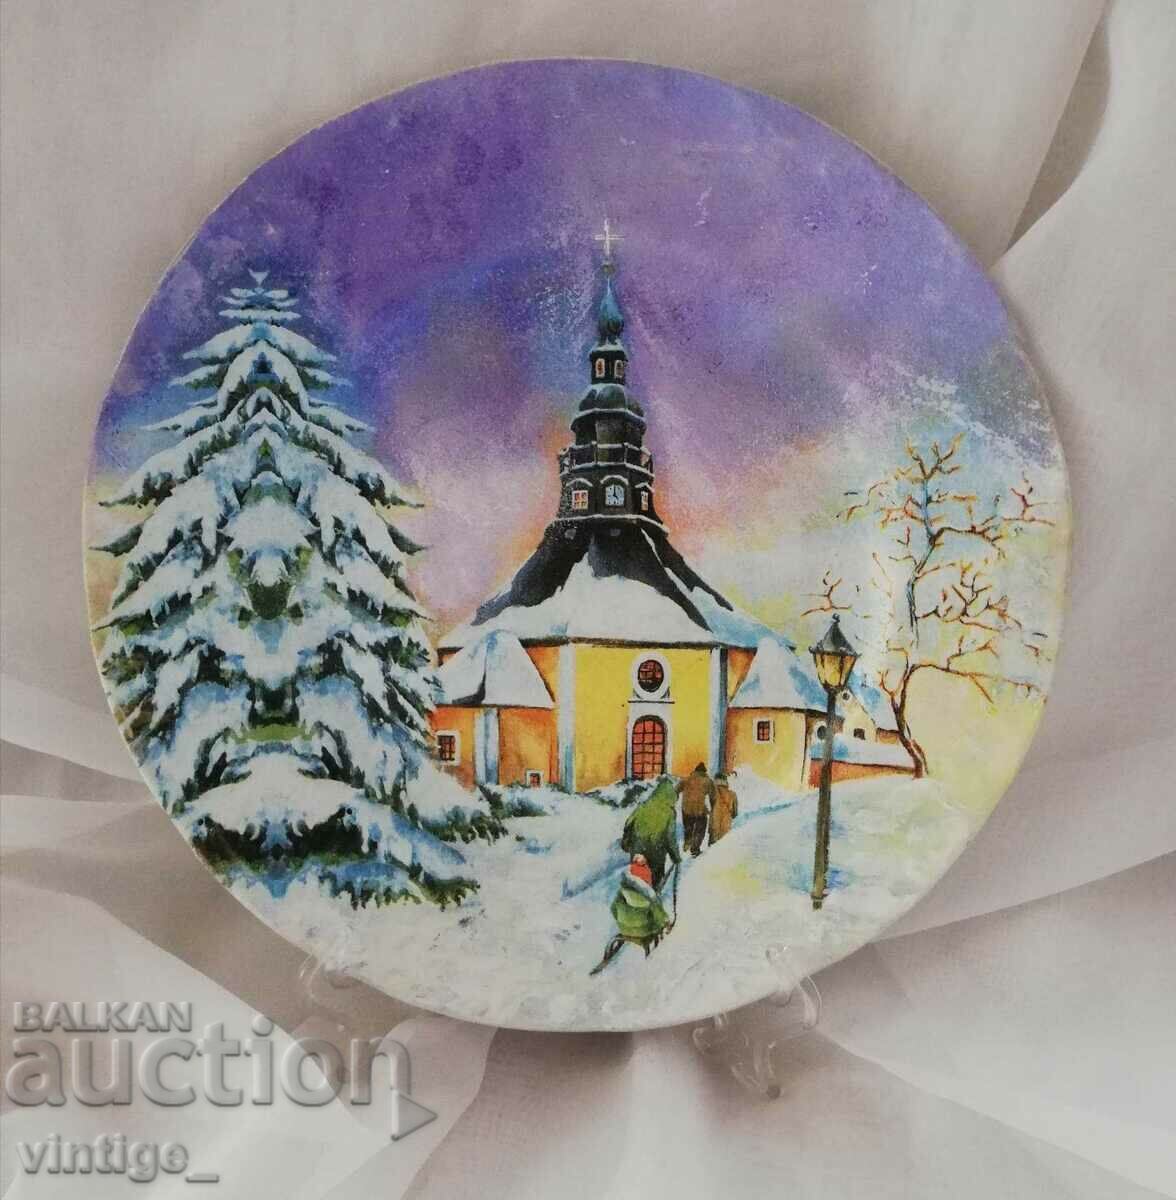 Souvenir plate with a Christmas, winter landscape